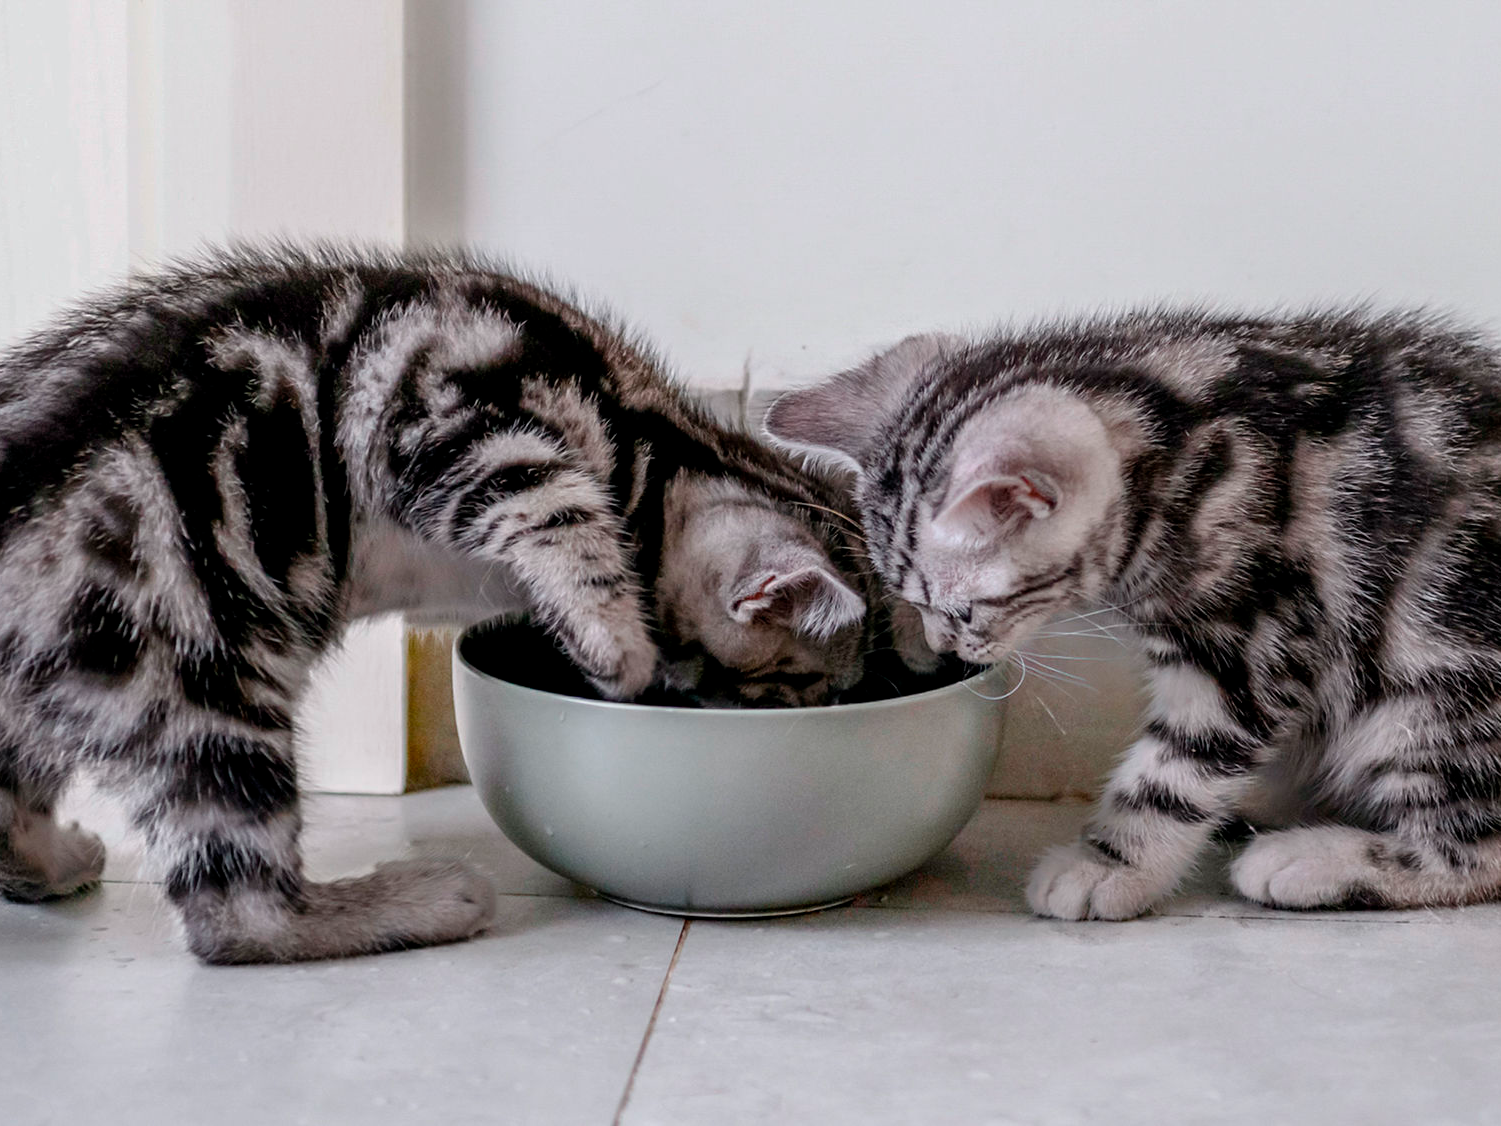 Deux chatons mangent dans la gamelle